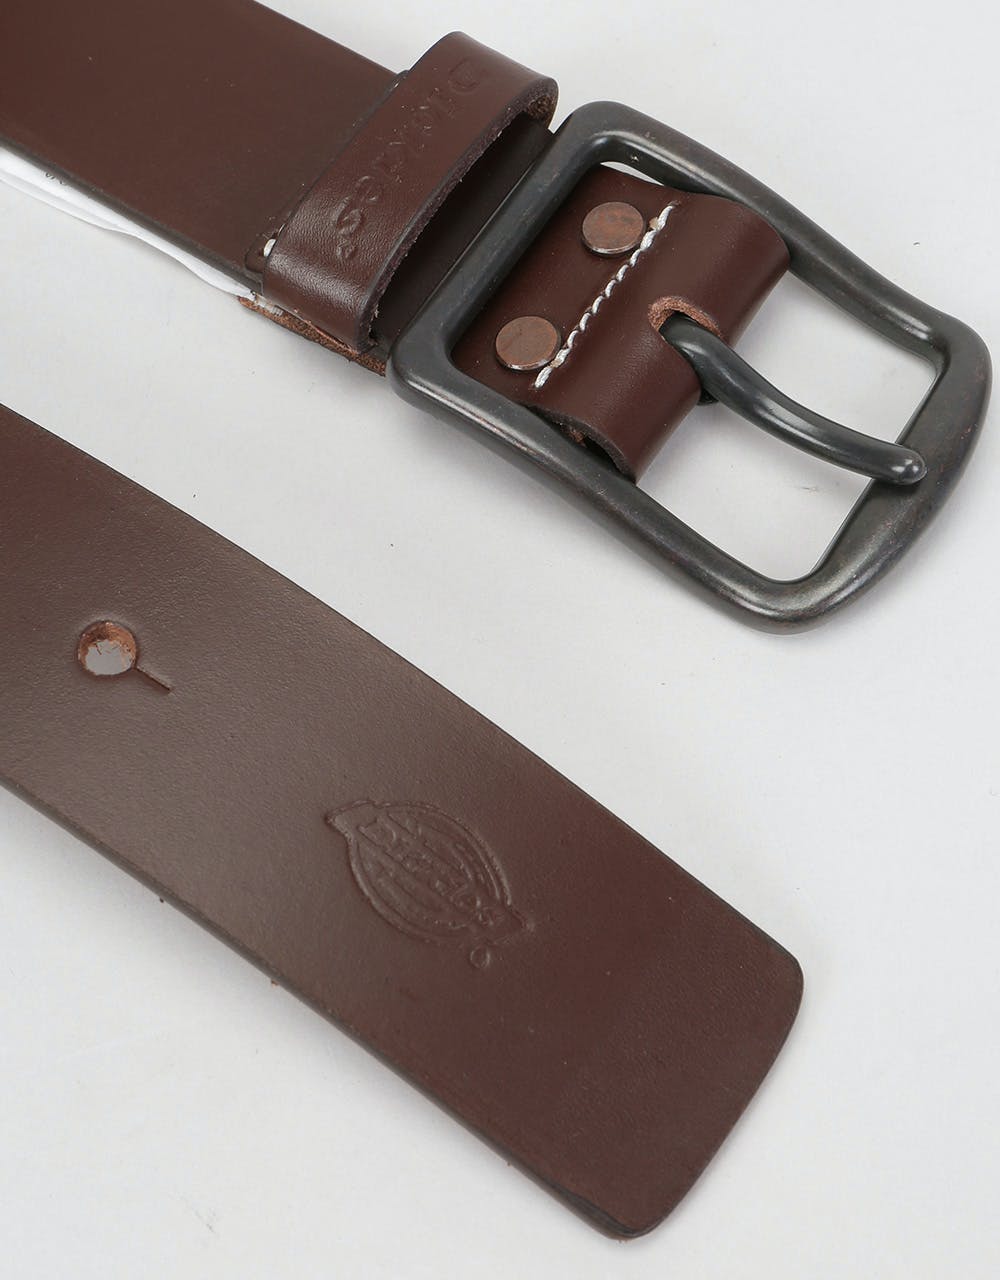 Dickies Helmsburg Leather Belt - Brown